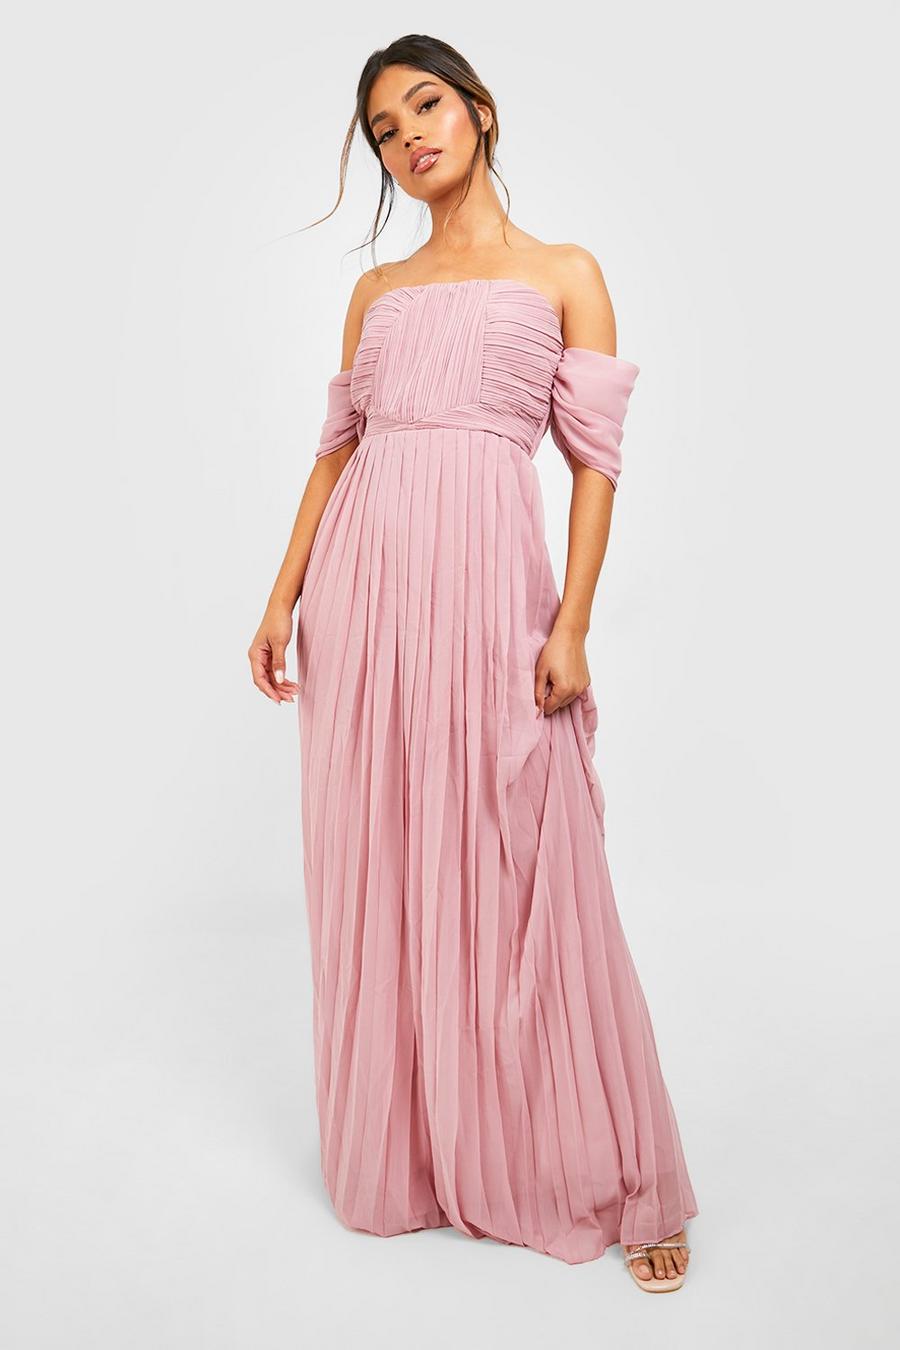 סמוק rosa שמלת שושבינה מקסי חשופת כתפיים עם קפלים